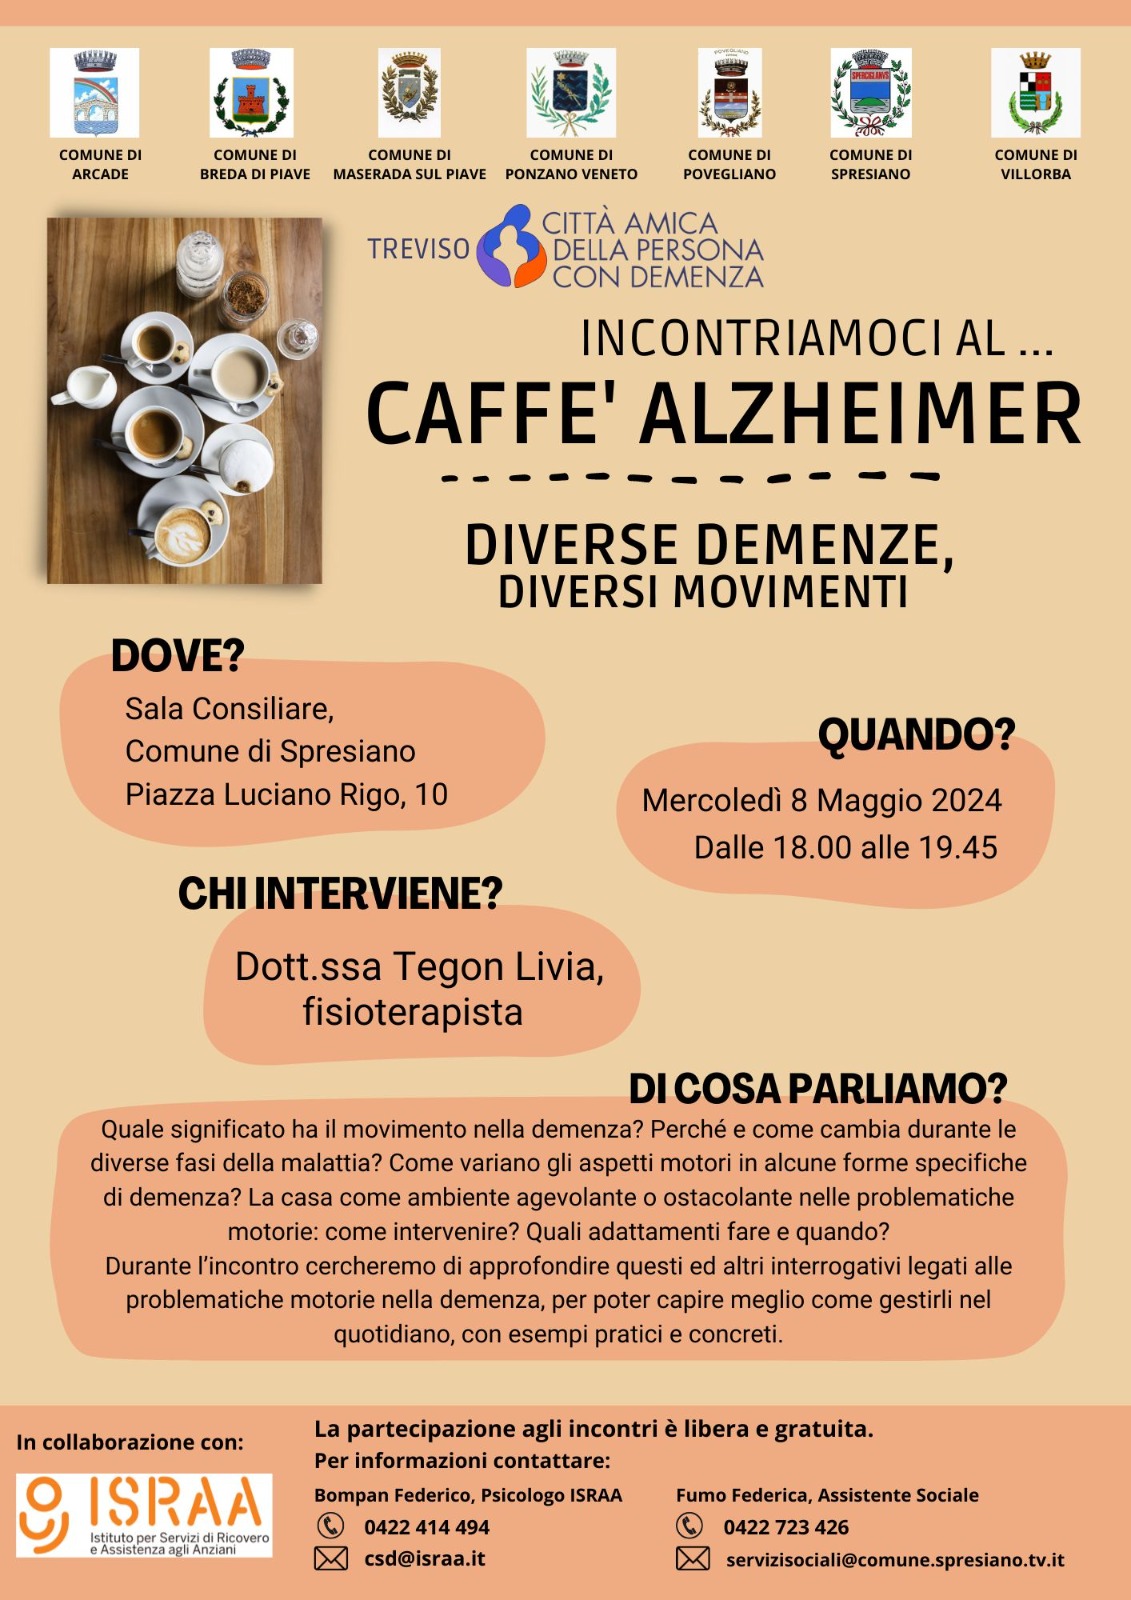 Caffè Alzheimer - Diverse demenze, diversi movimenti